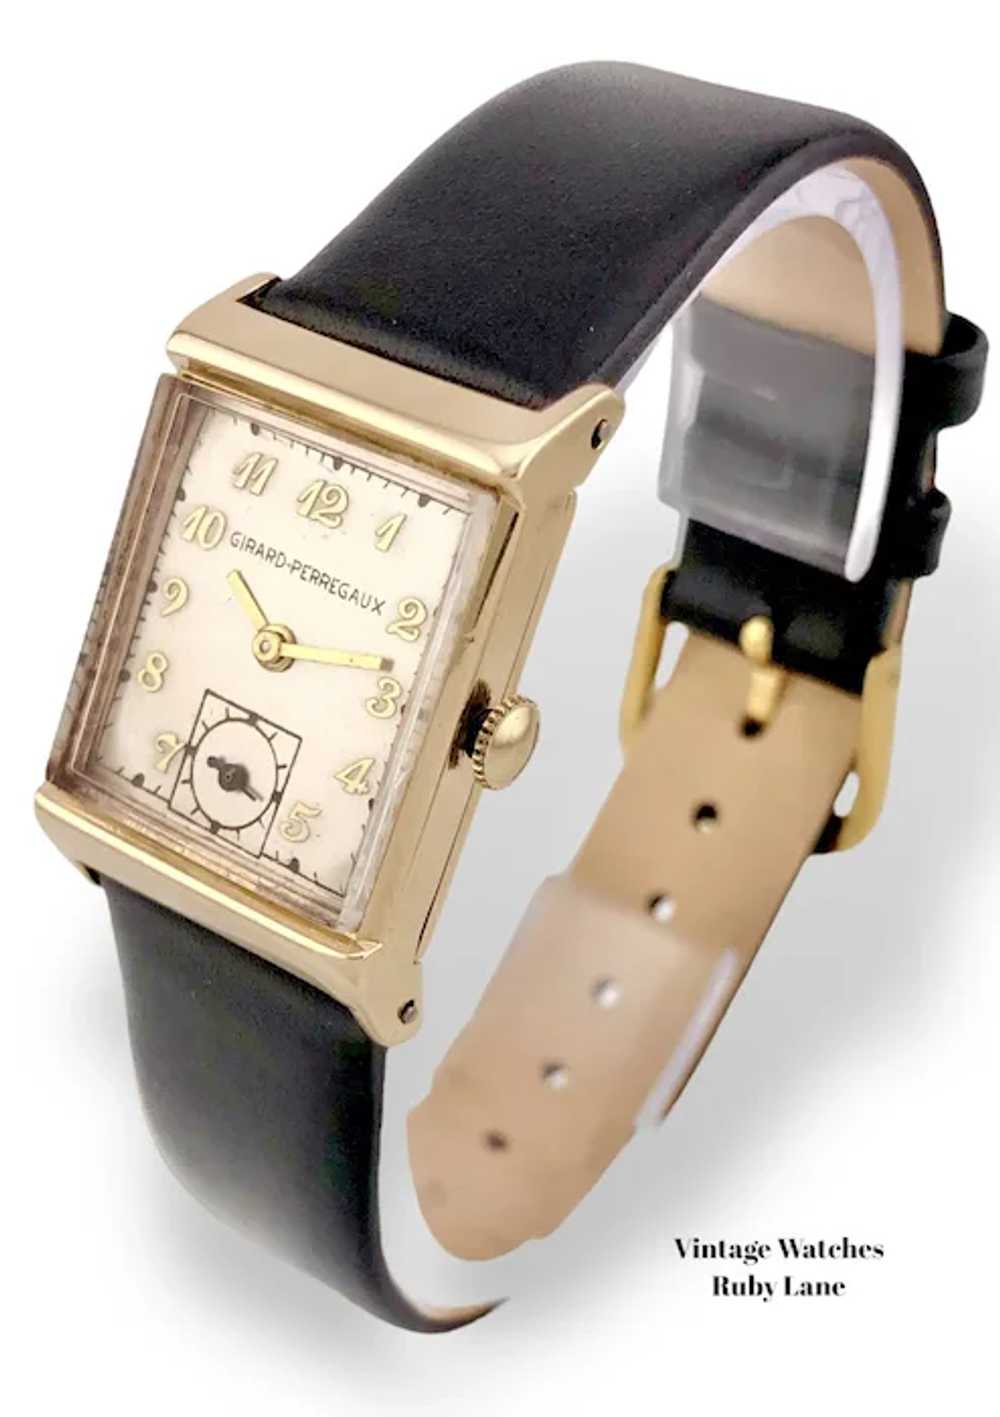 1948 Girard Perregaux 14K Gold Vintage Watch - image 4